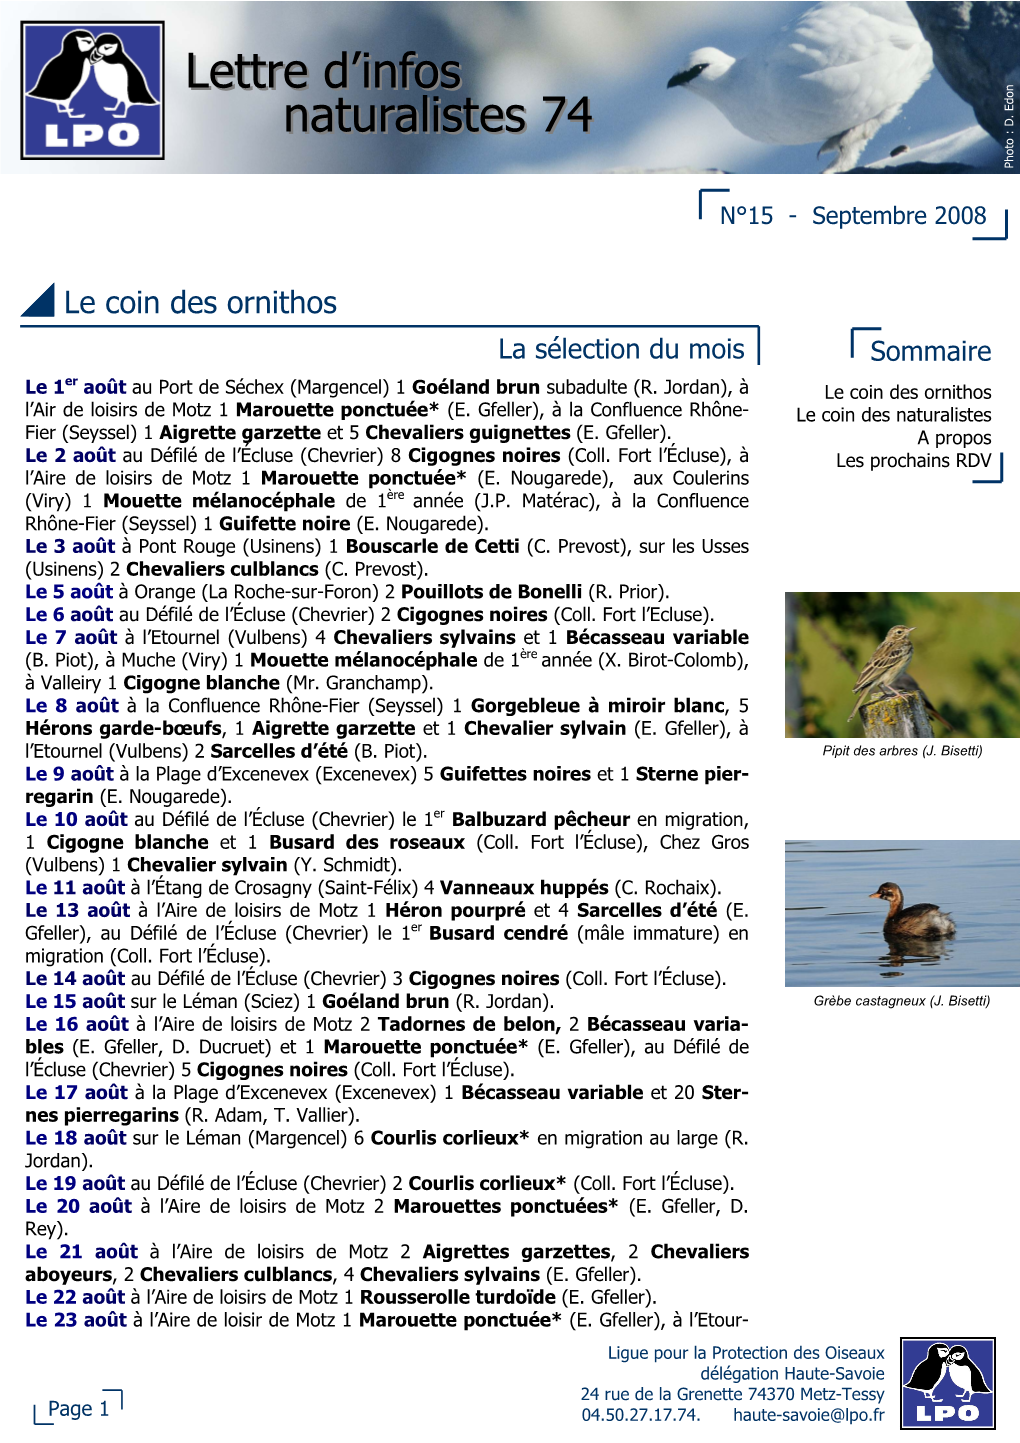 Lettre D'infos Naturalistes 74